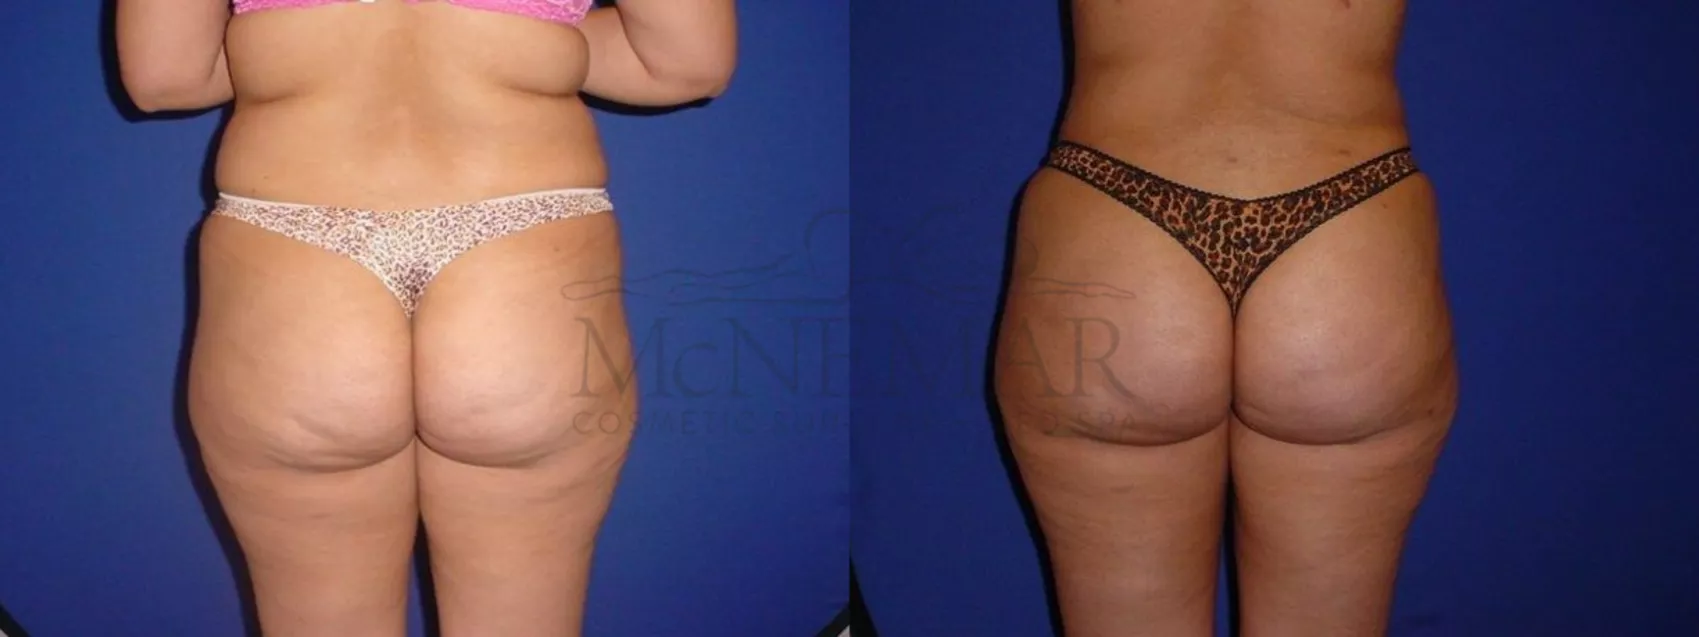 Brazilian Butt Lift (BBL) Before & After Photos Patient 109